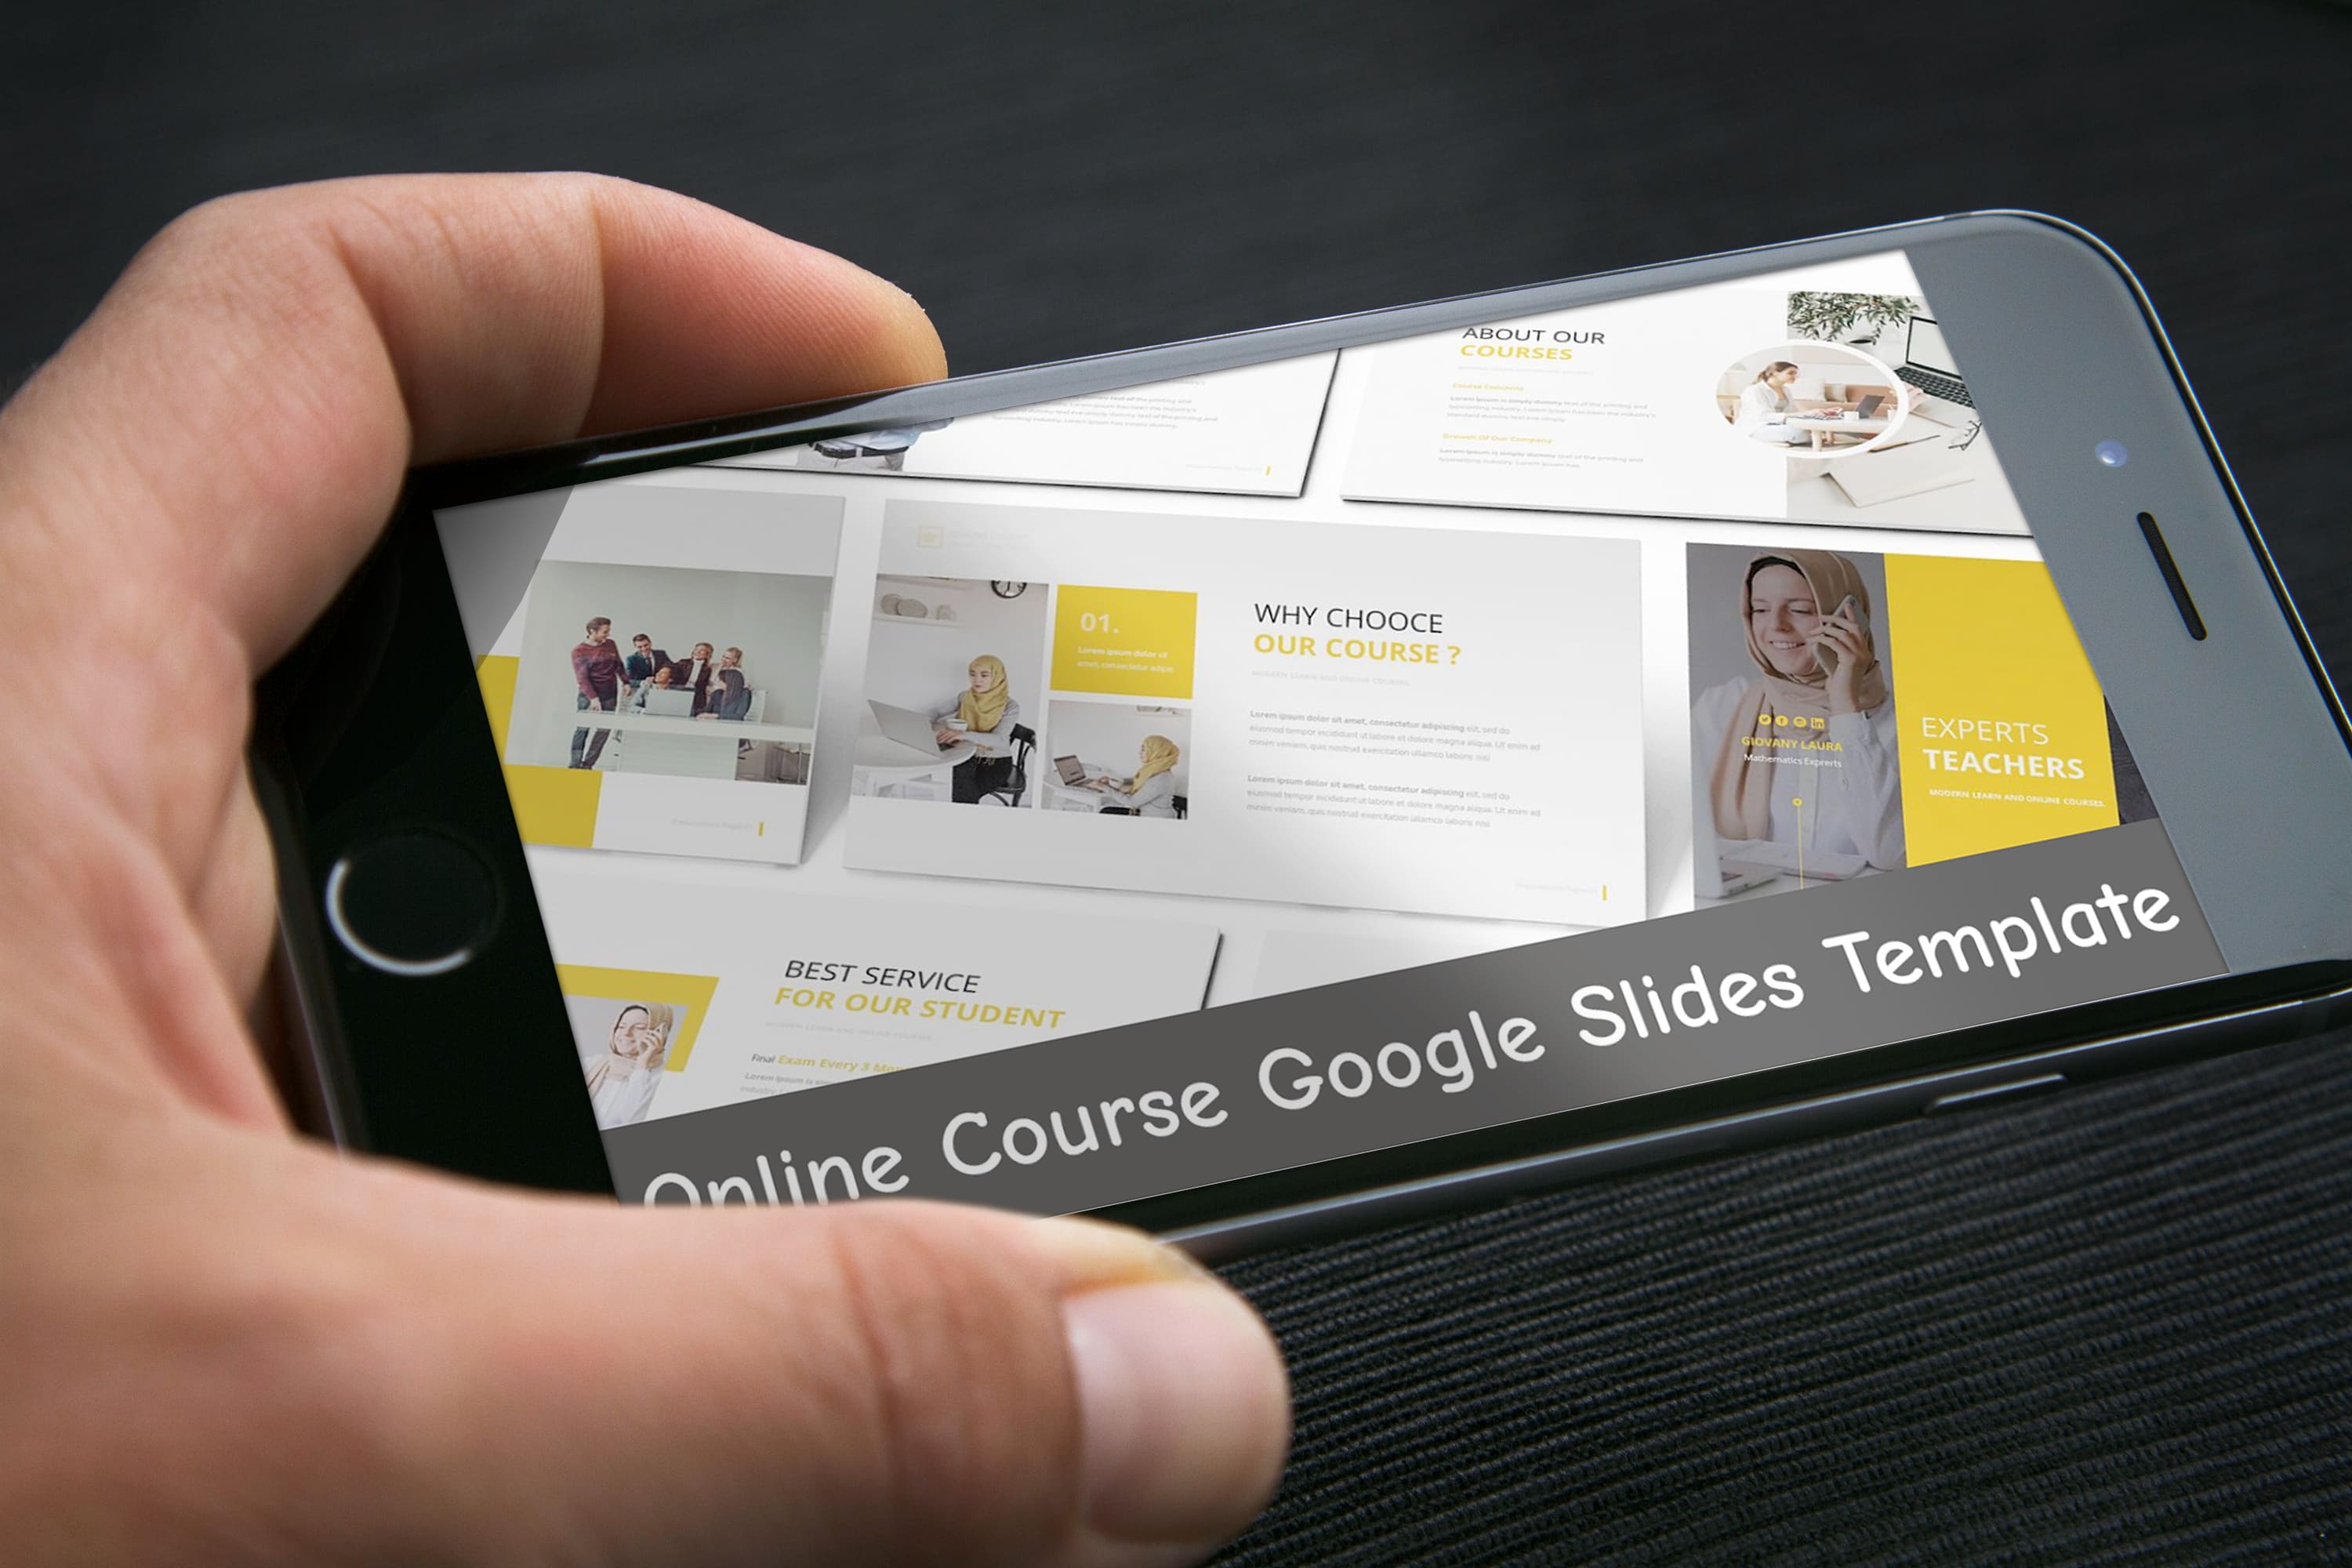 Online Course Google Slides Template - Mockup on Smartphone.